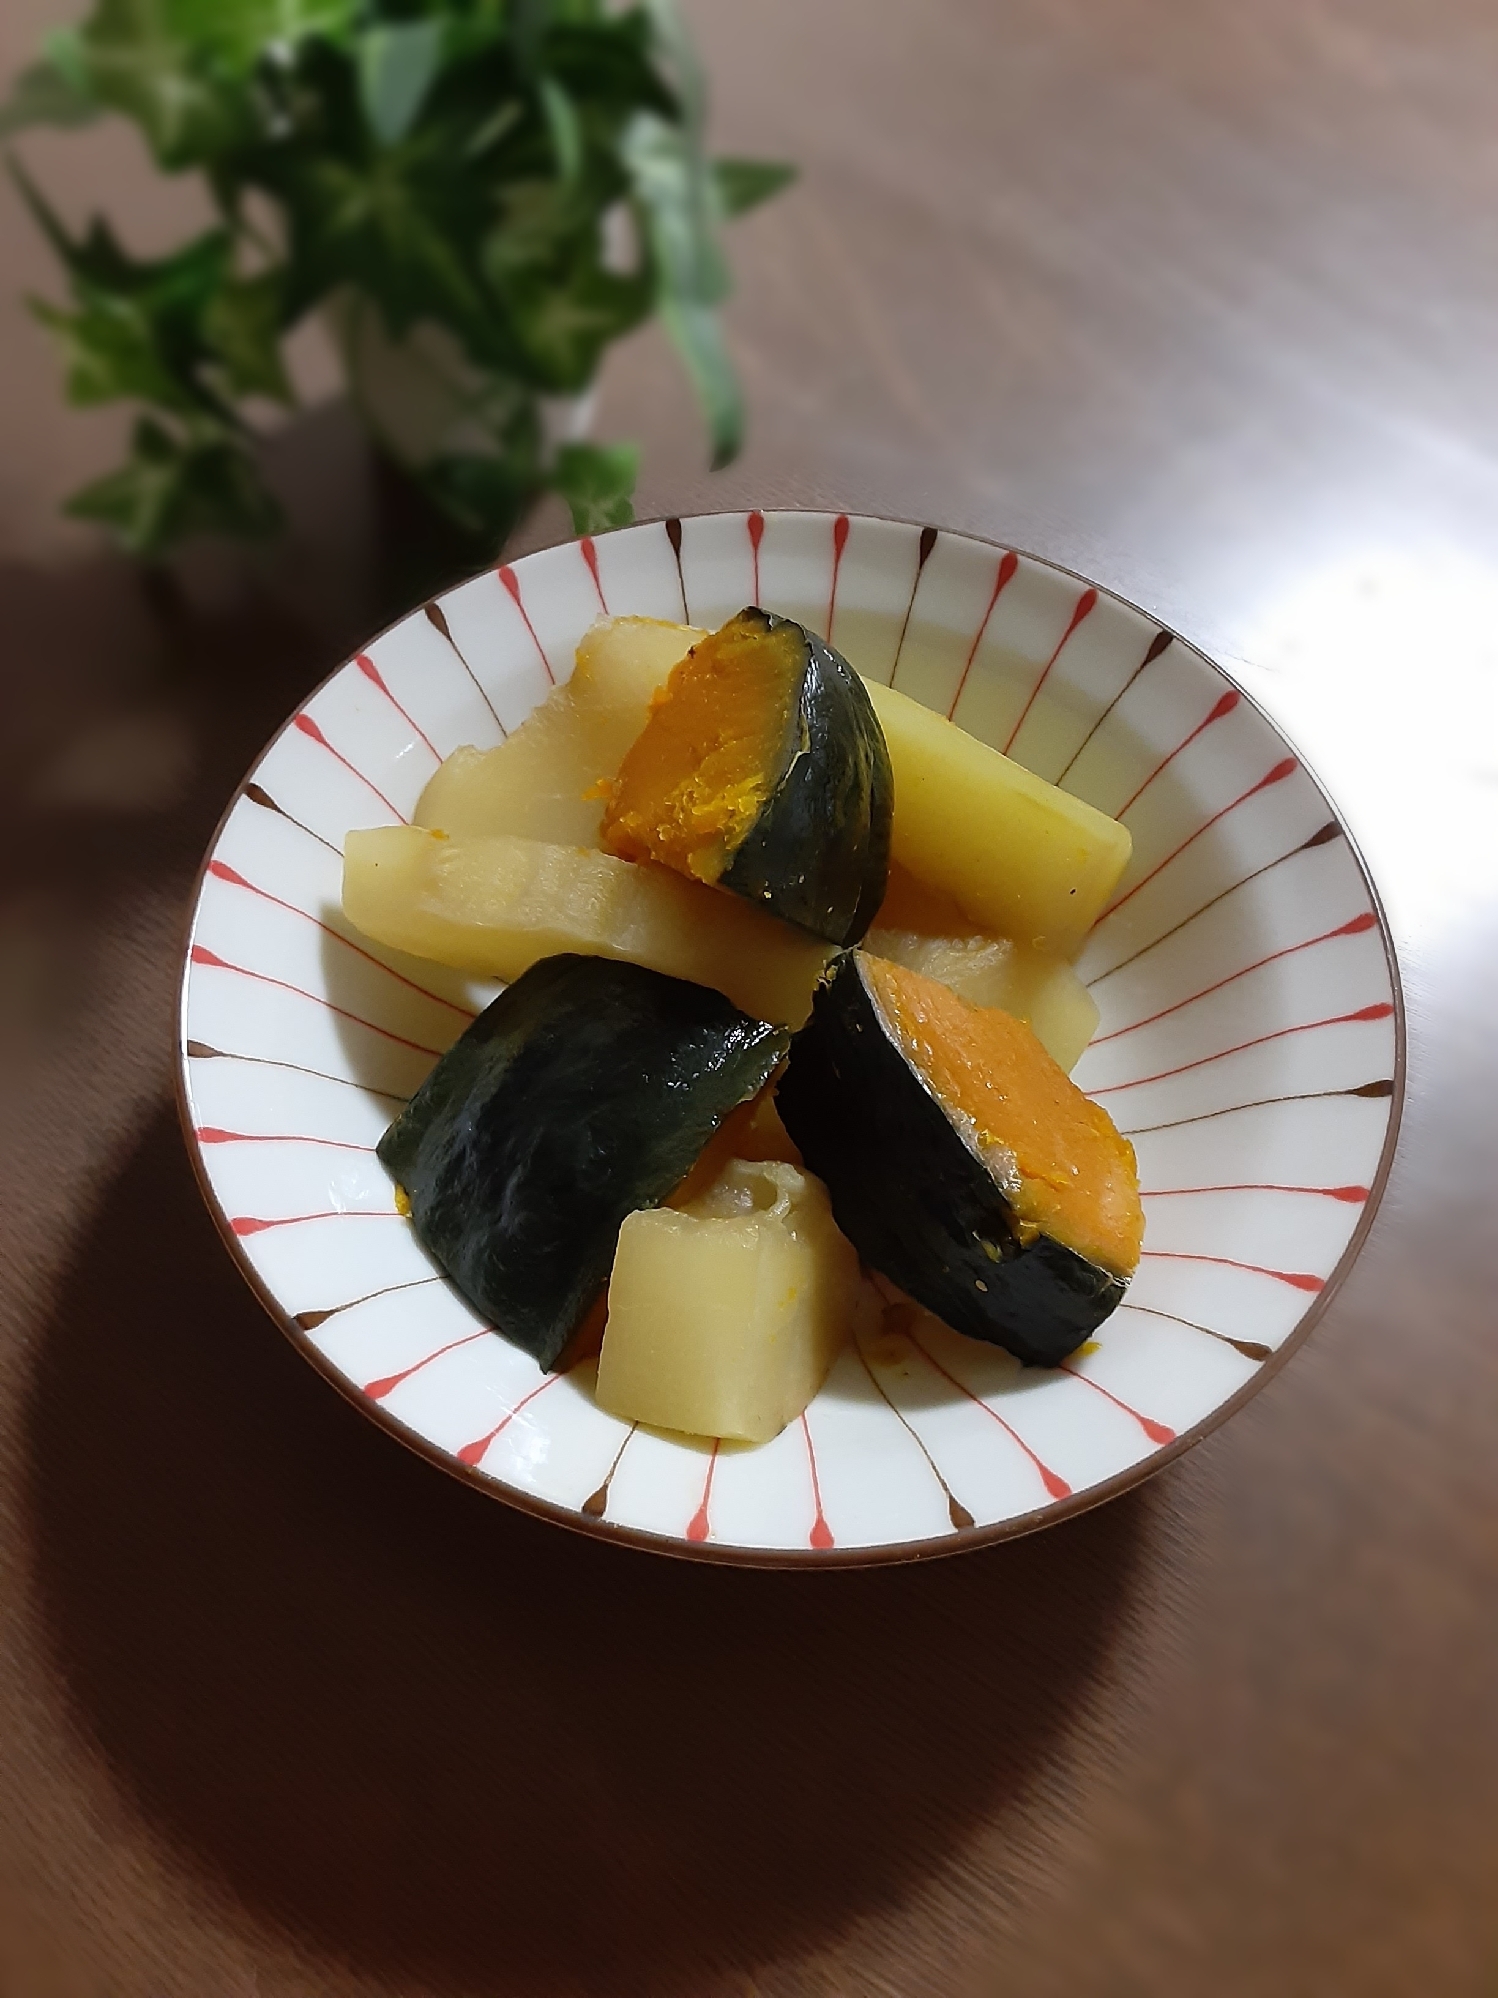 【めんつゆのみ】かぼちゃとユウゴウ(夕顔)の煮物